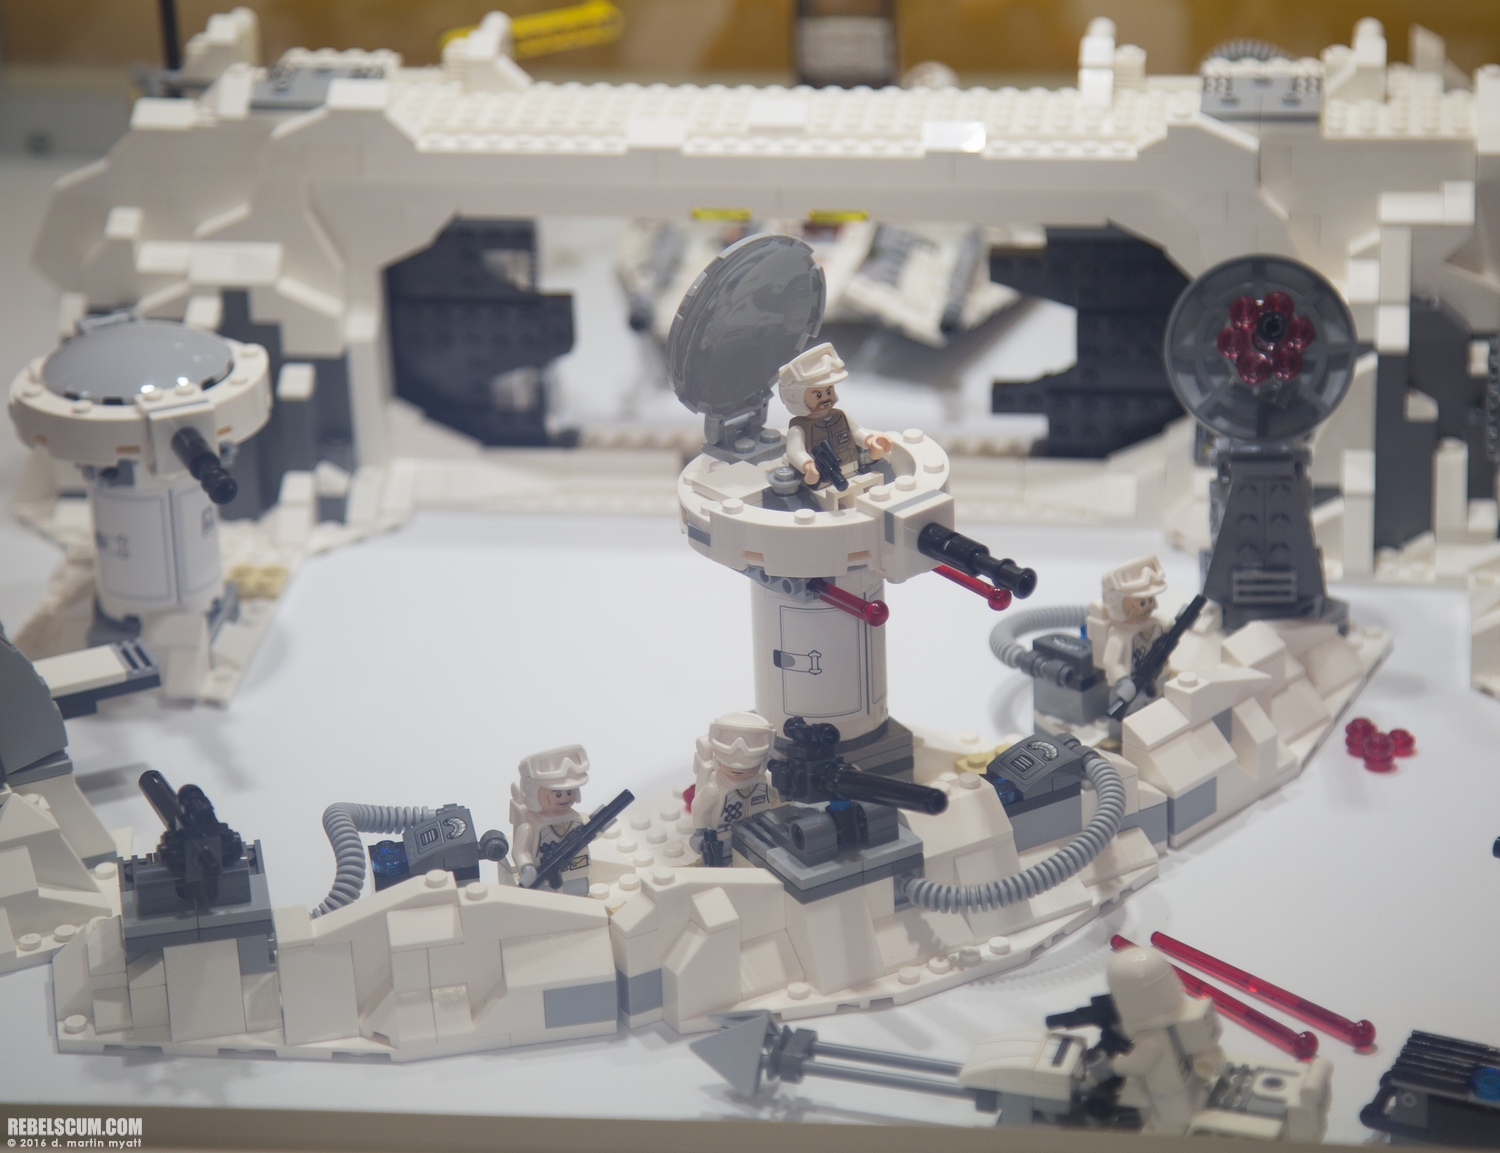 LEGO-2015-International-Toy-Fair-Star-Wars-119.jpg